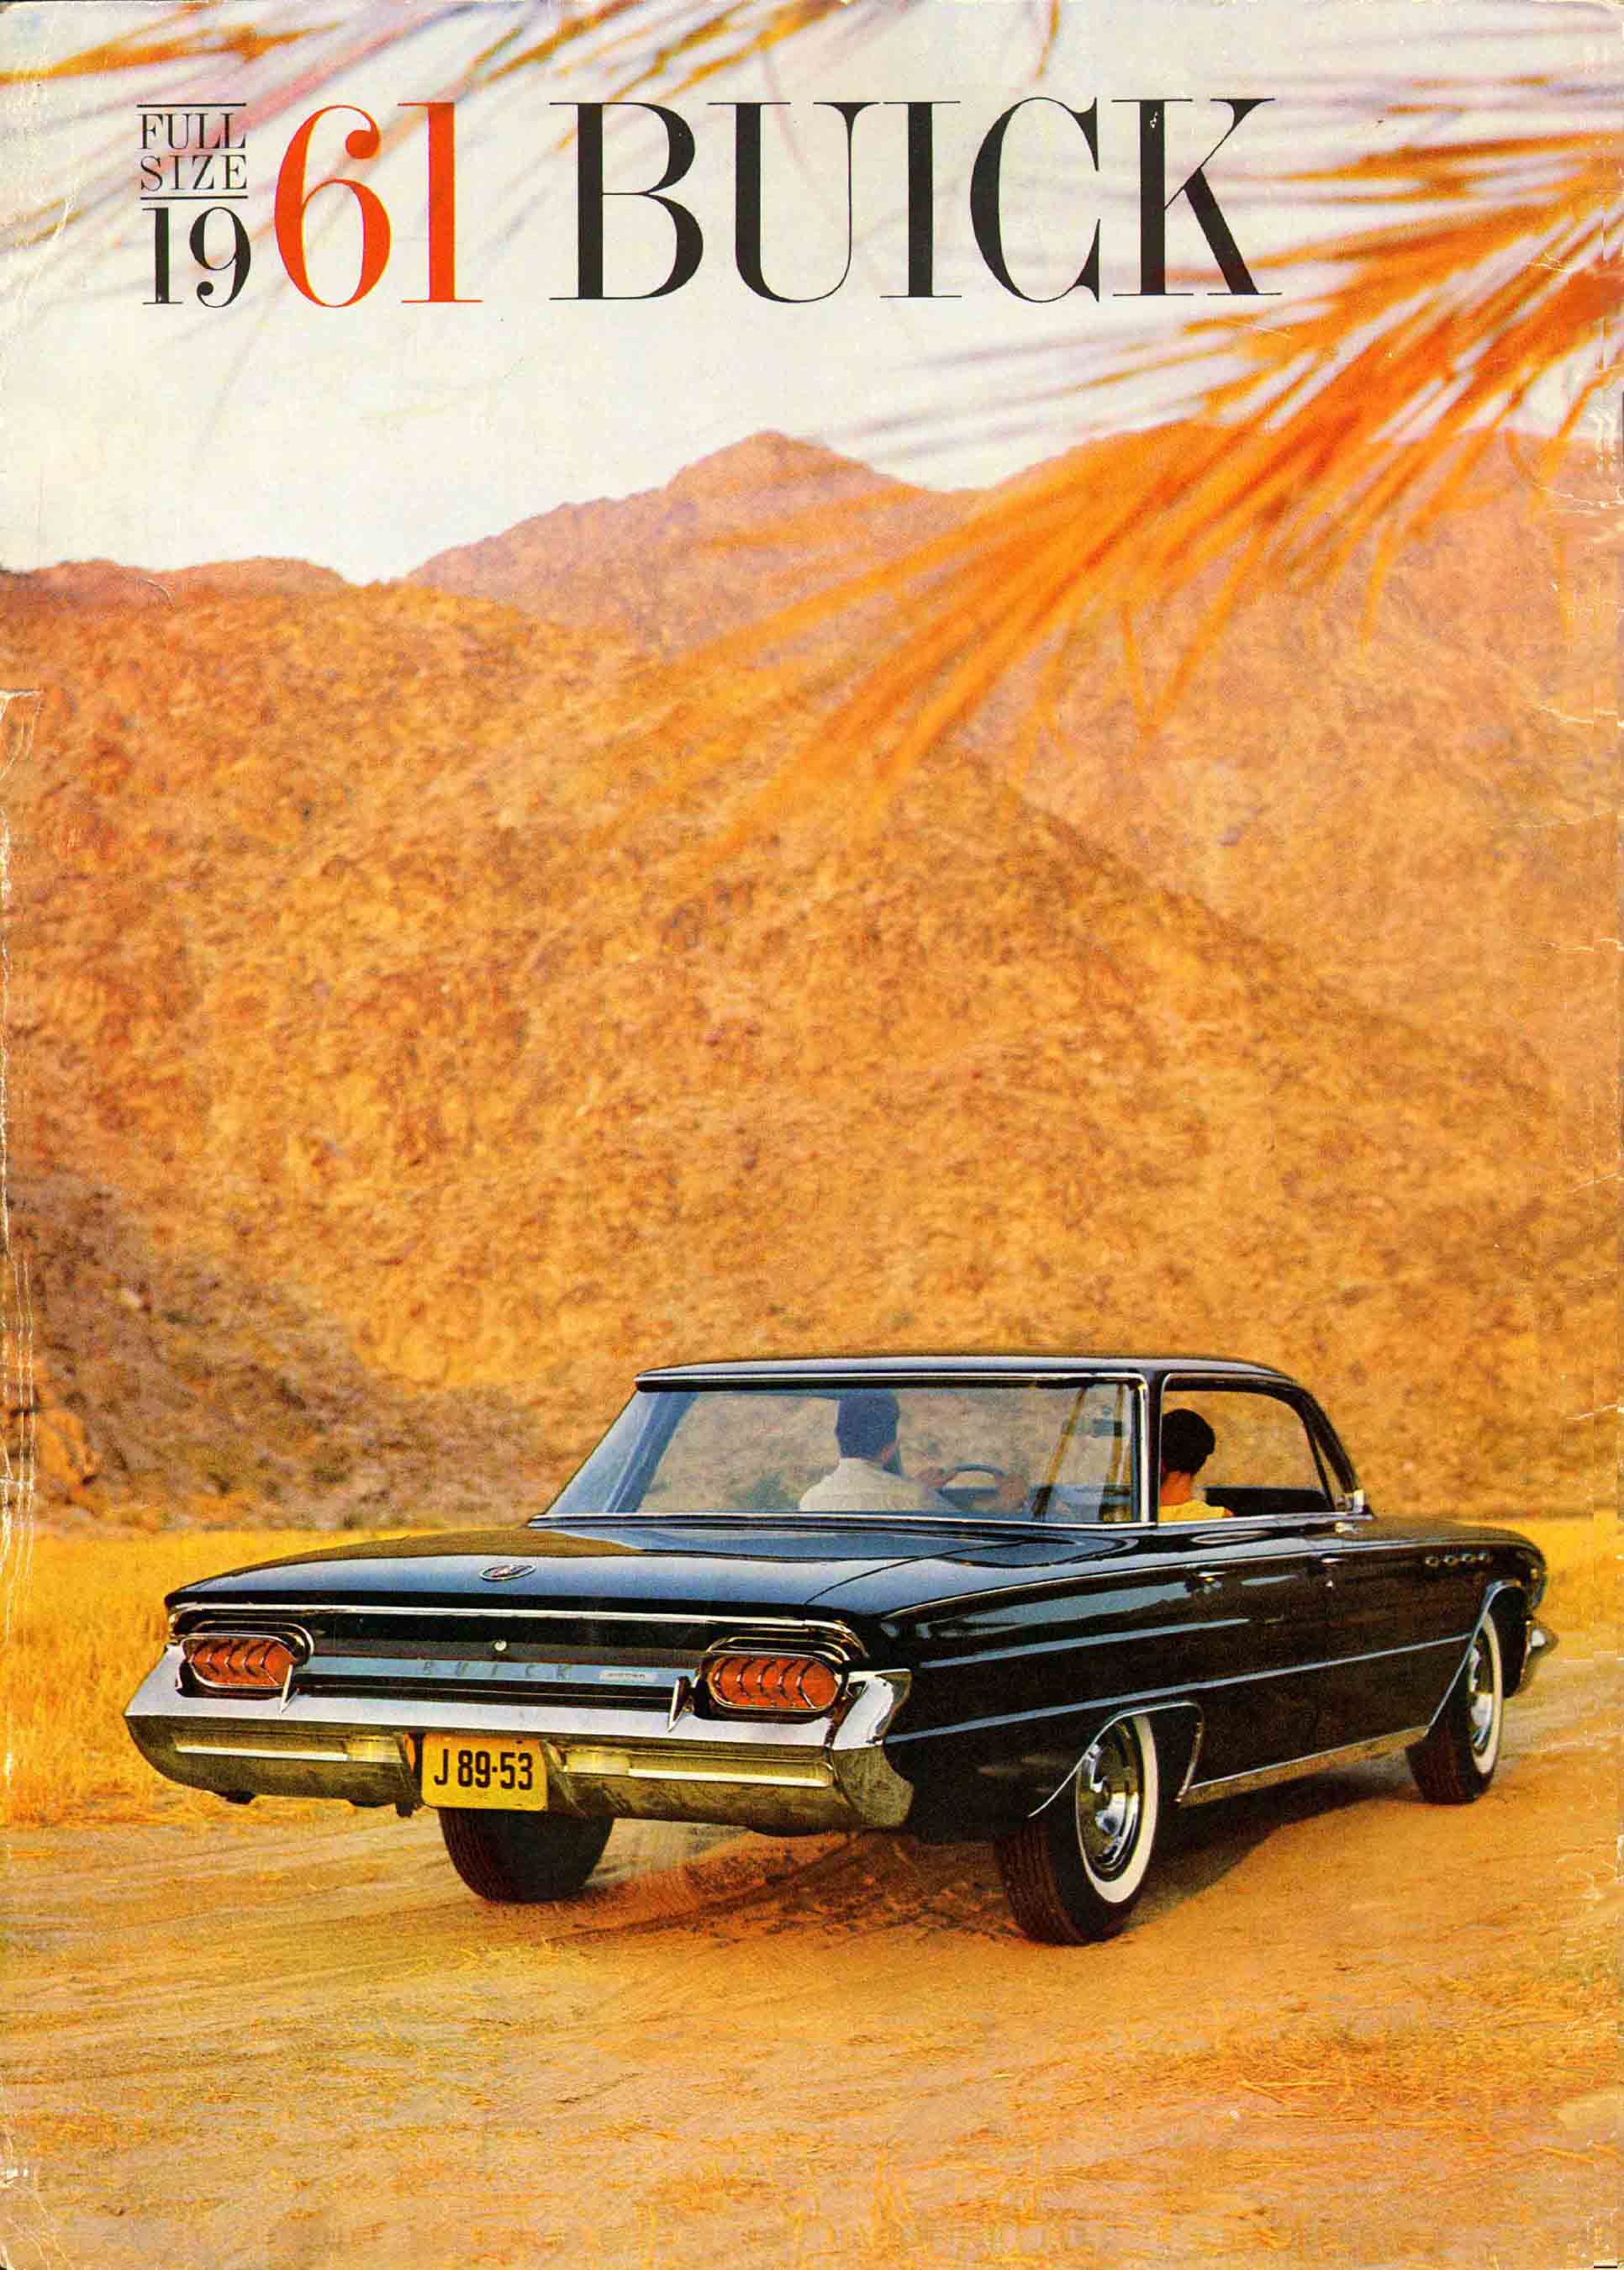 1961 Buick Full Size Prestige-24